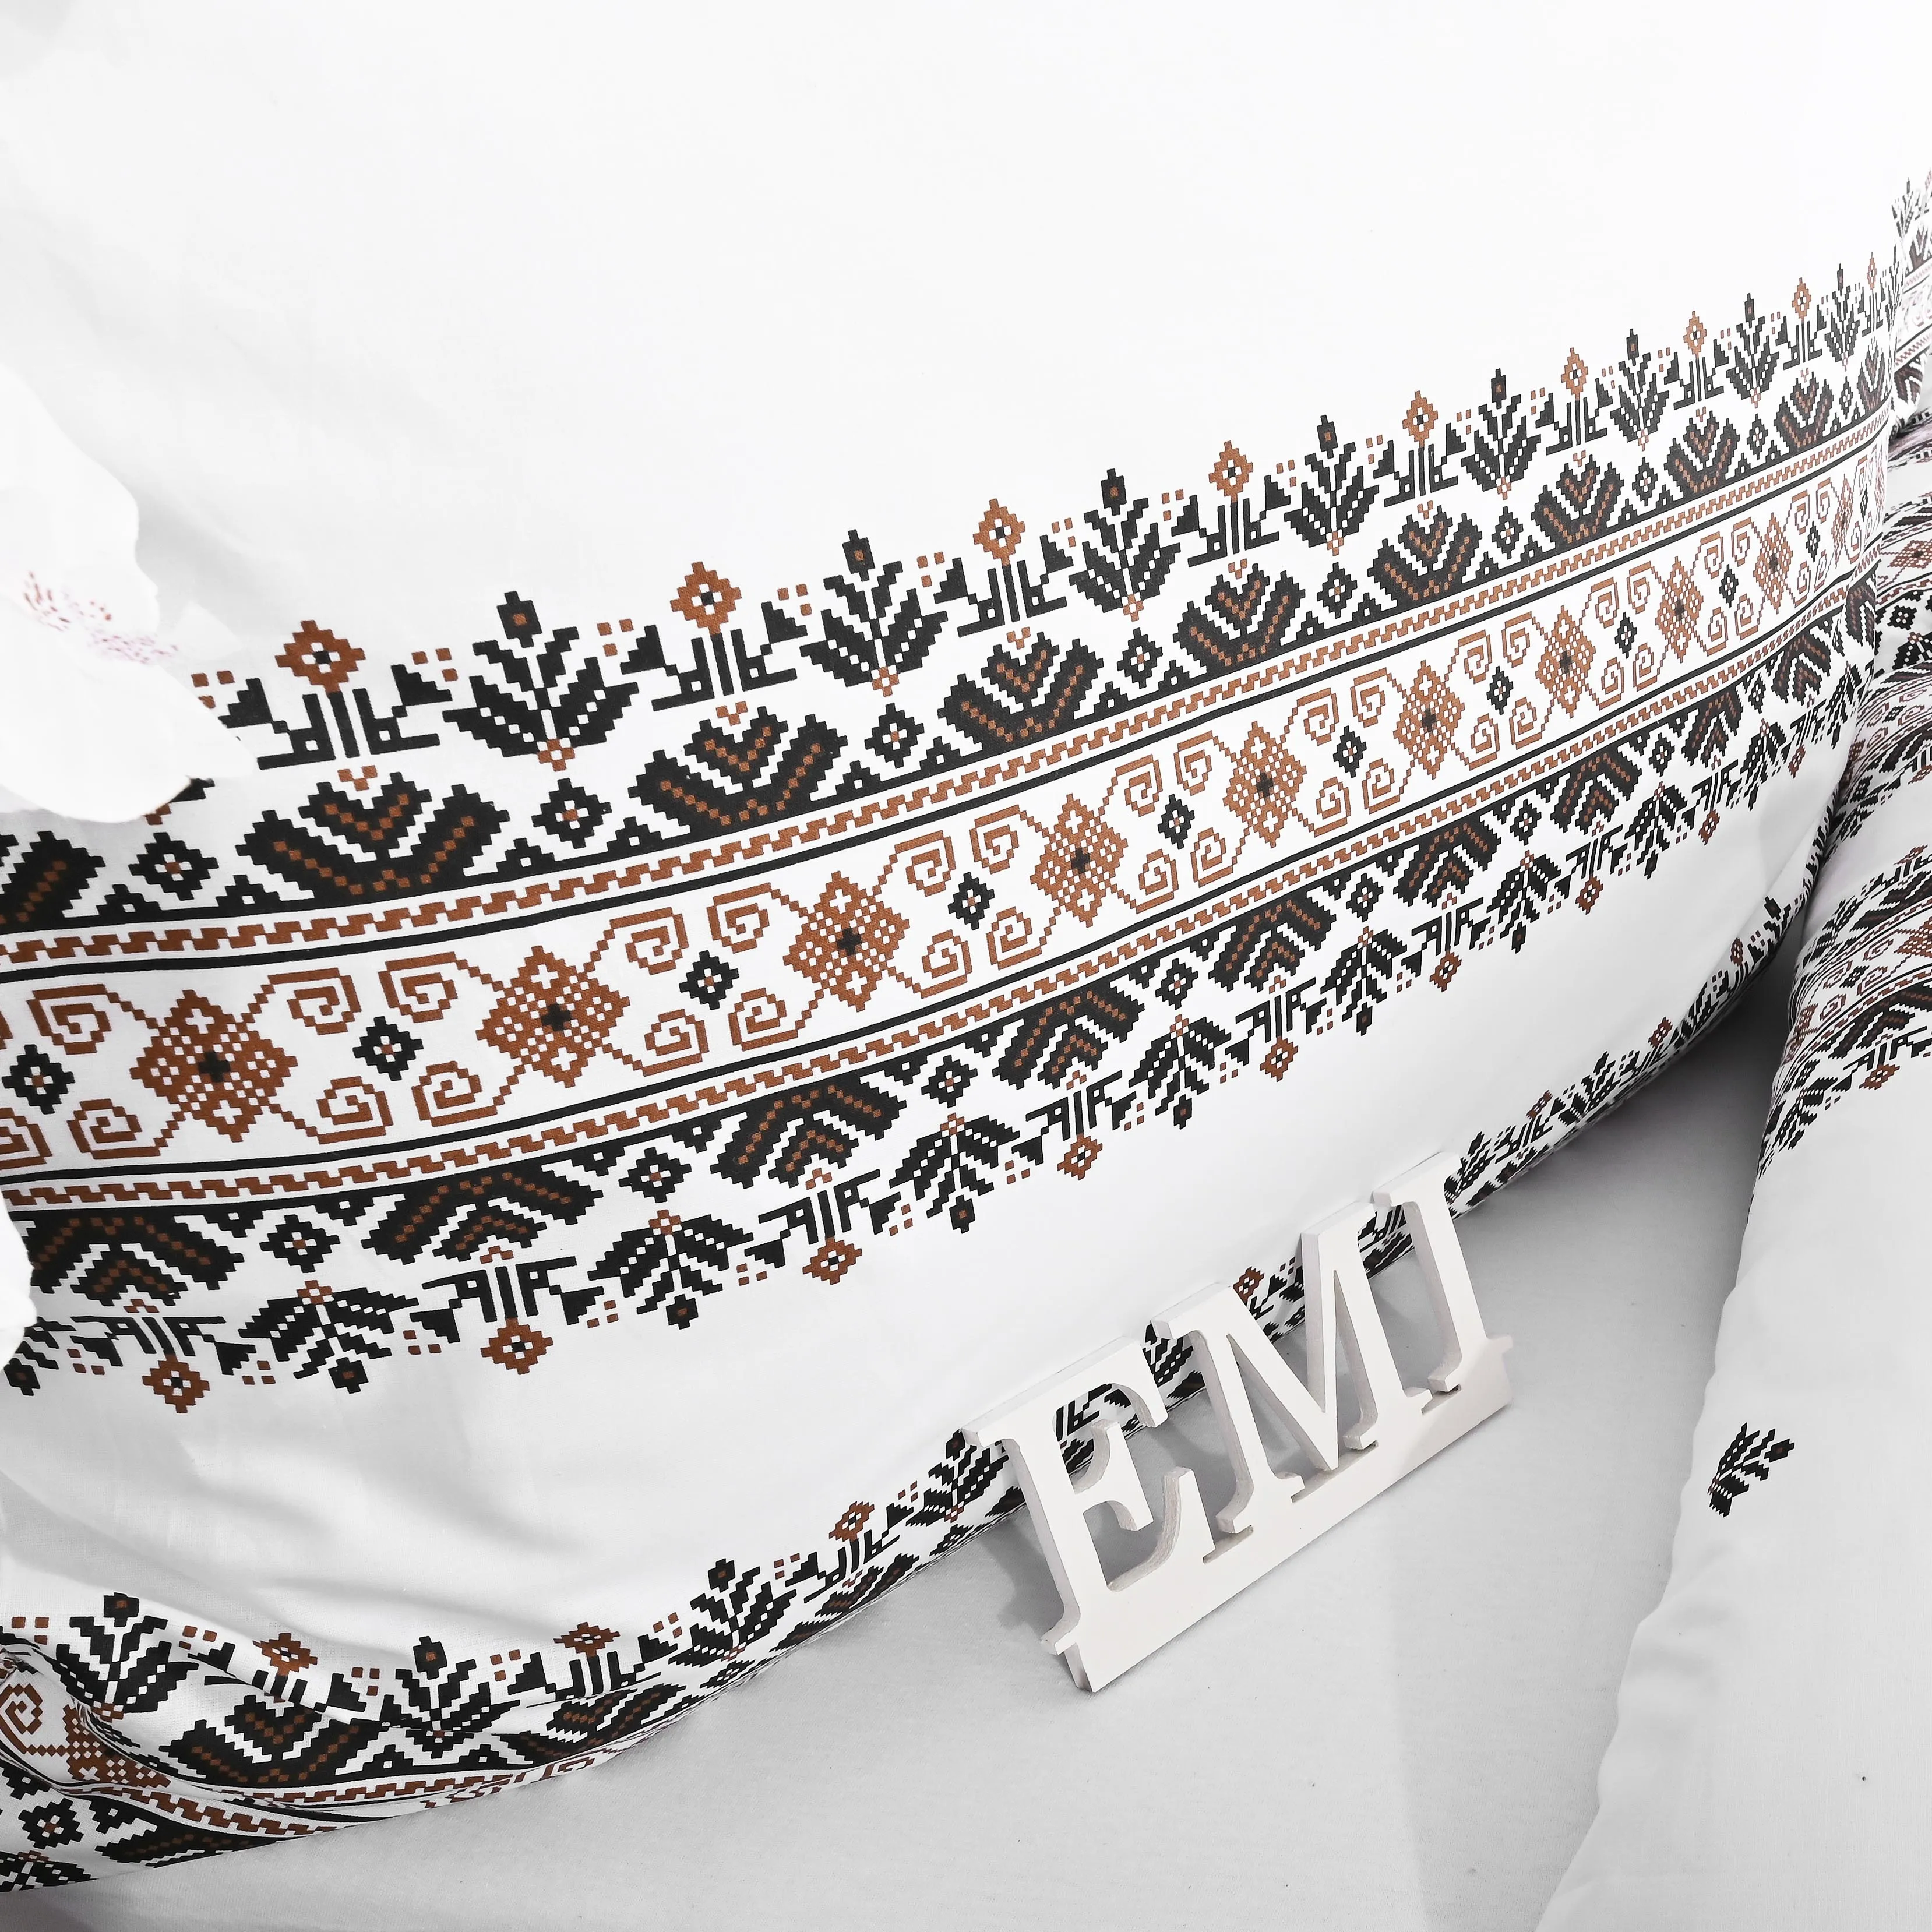 EMI posteľné obliečky bavlnené Dorota hnedé 1×1 set, posteľné obliečky